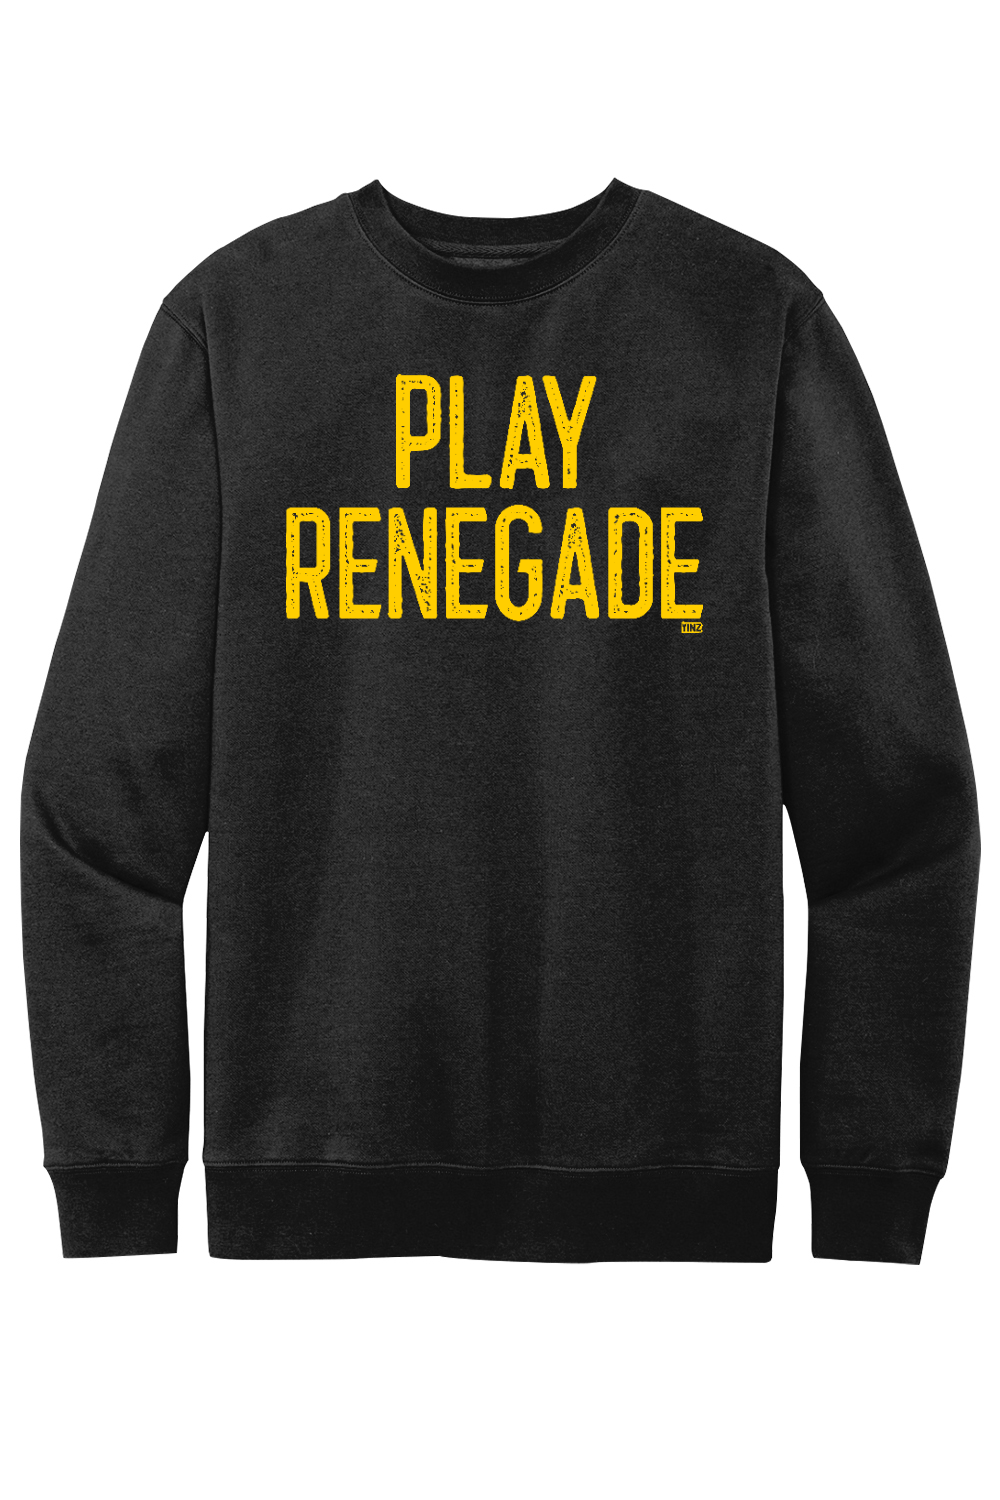 Play Renegade - Fleece Crewneck Sweatshirt - Yinzylvania